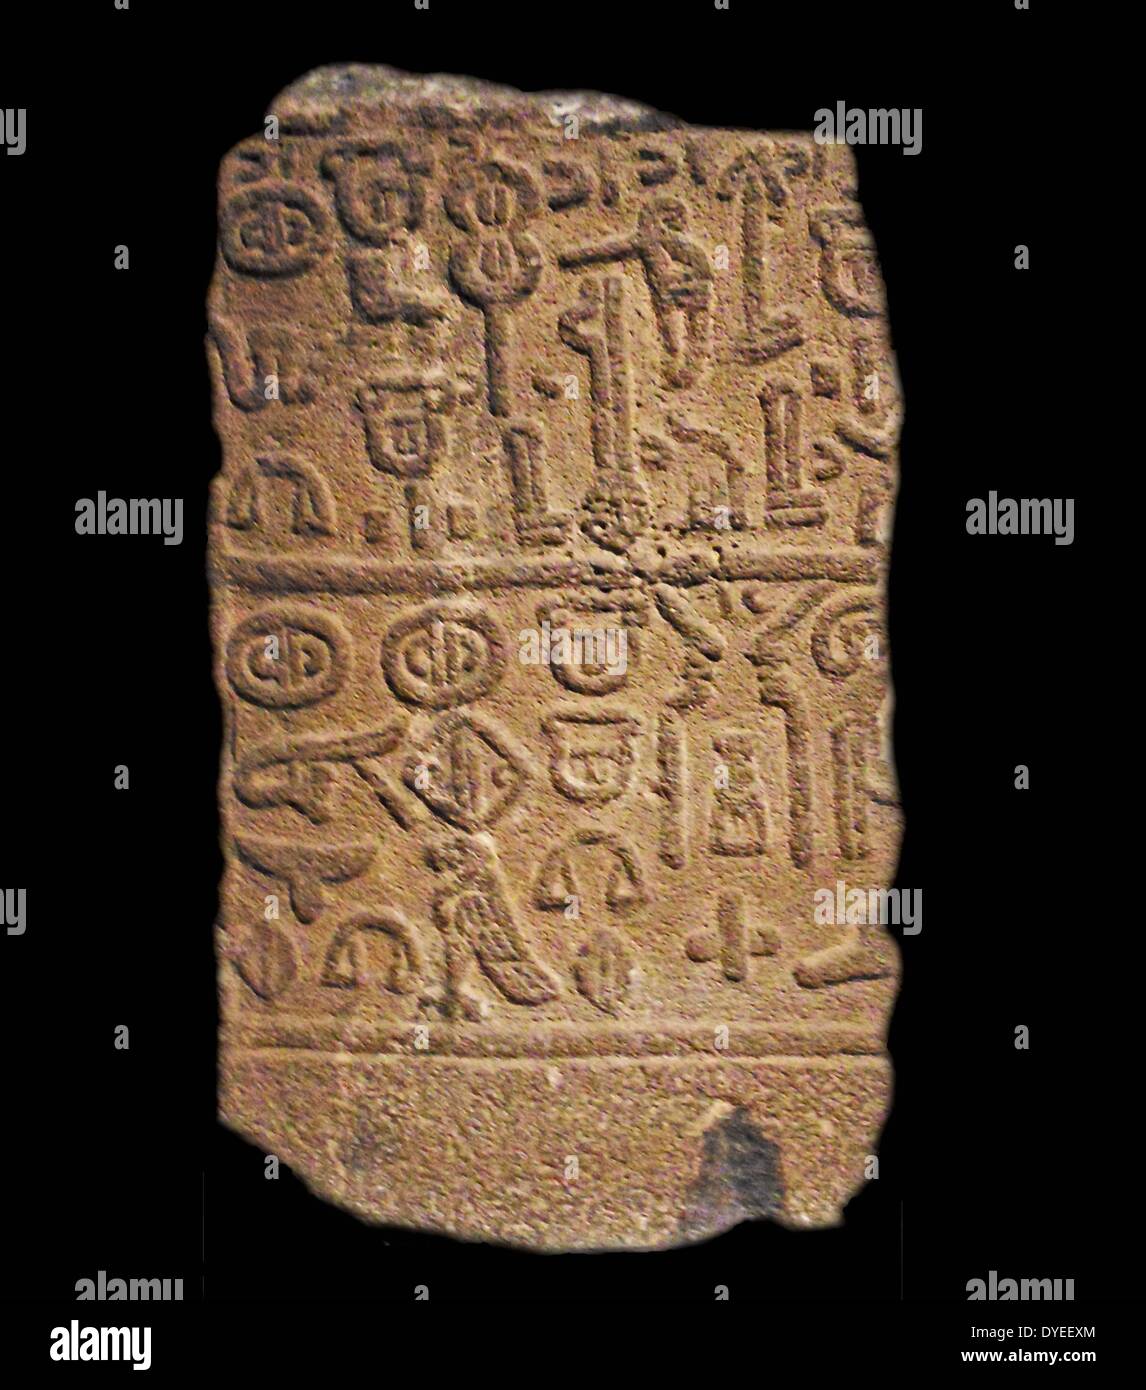 Royal iscrizione in Luwain 740 A.C. Foto Stock